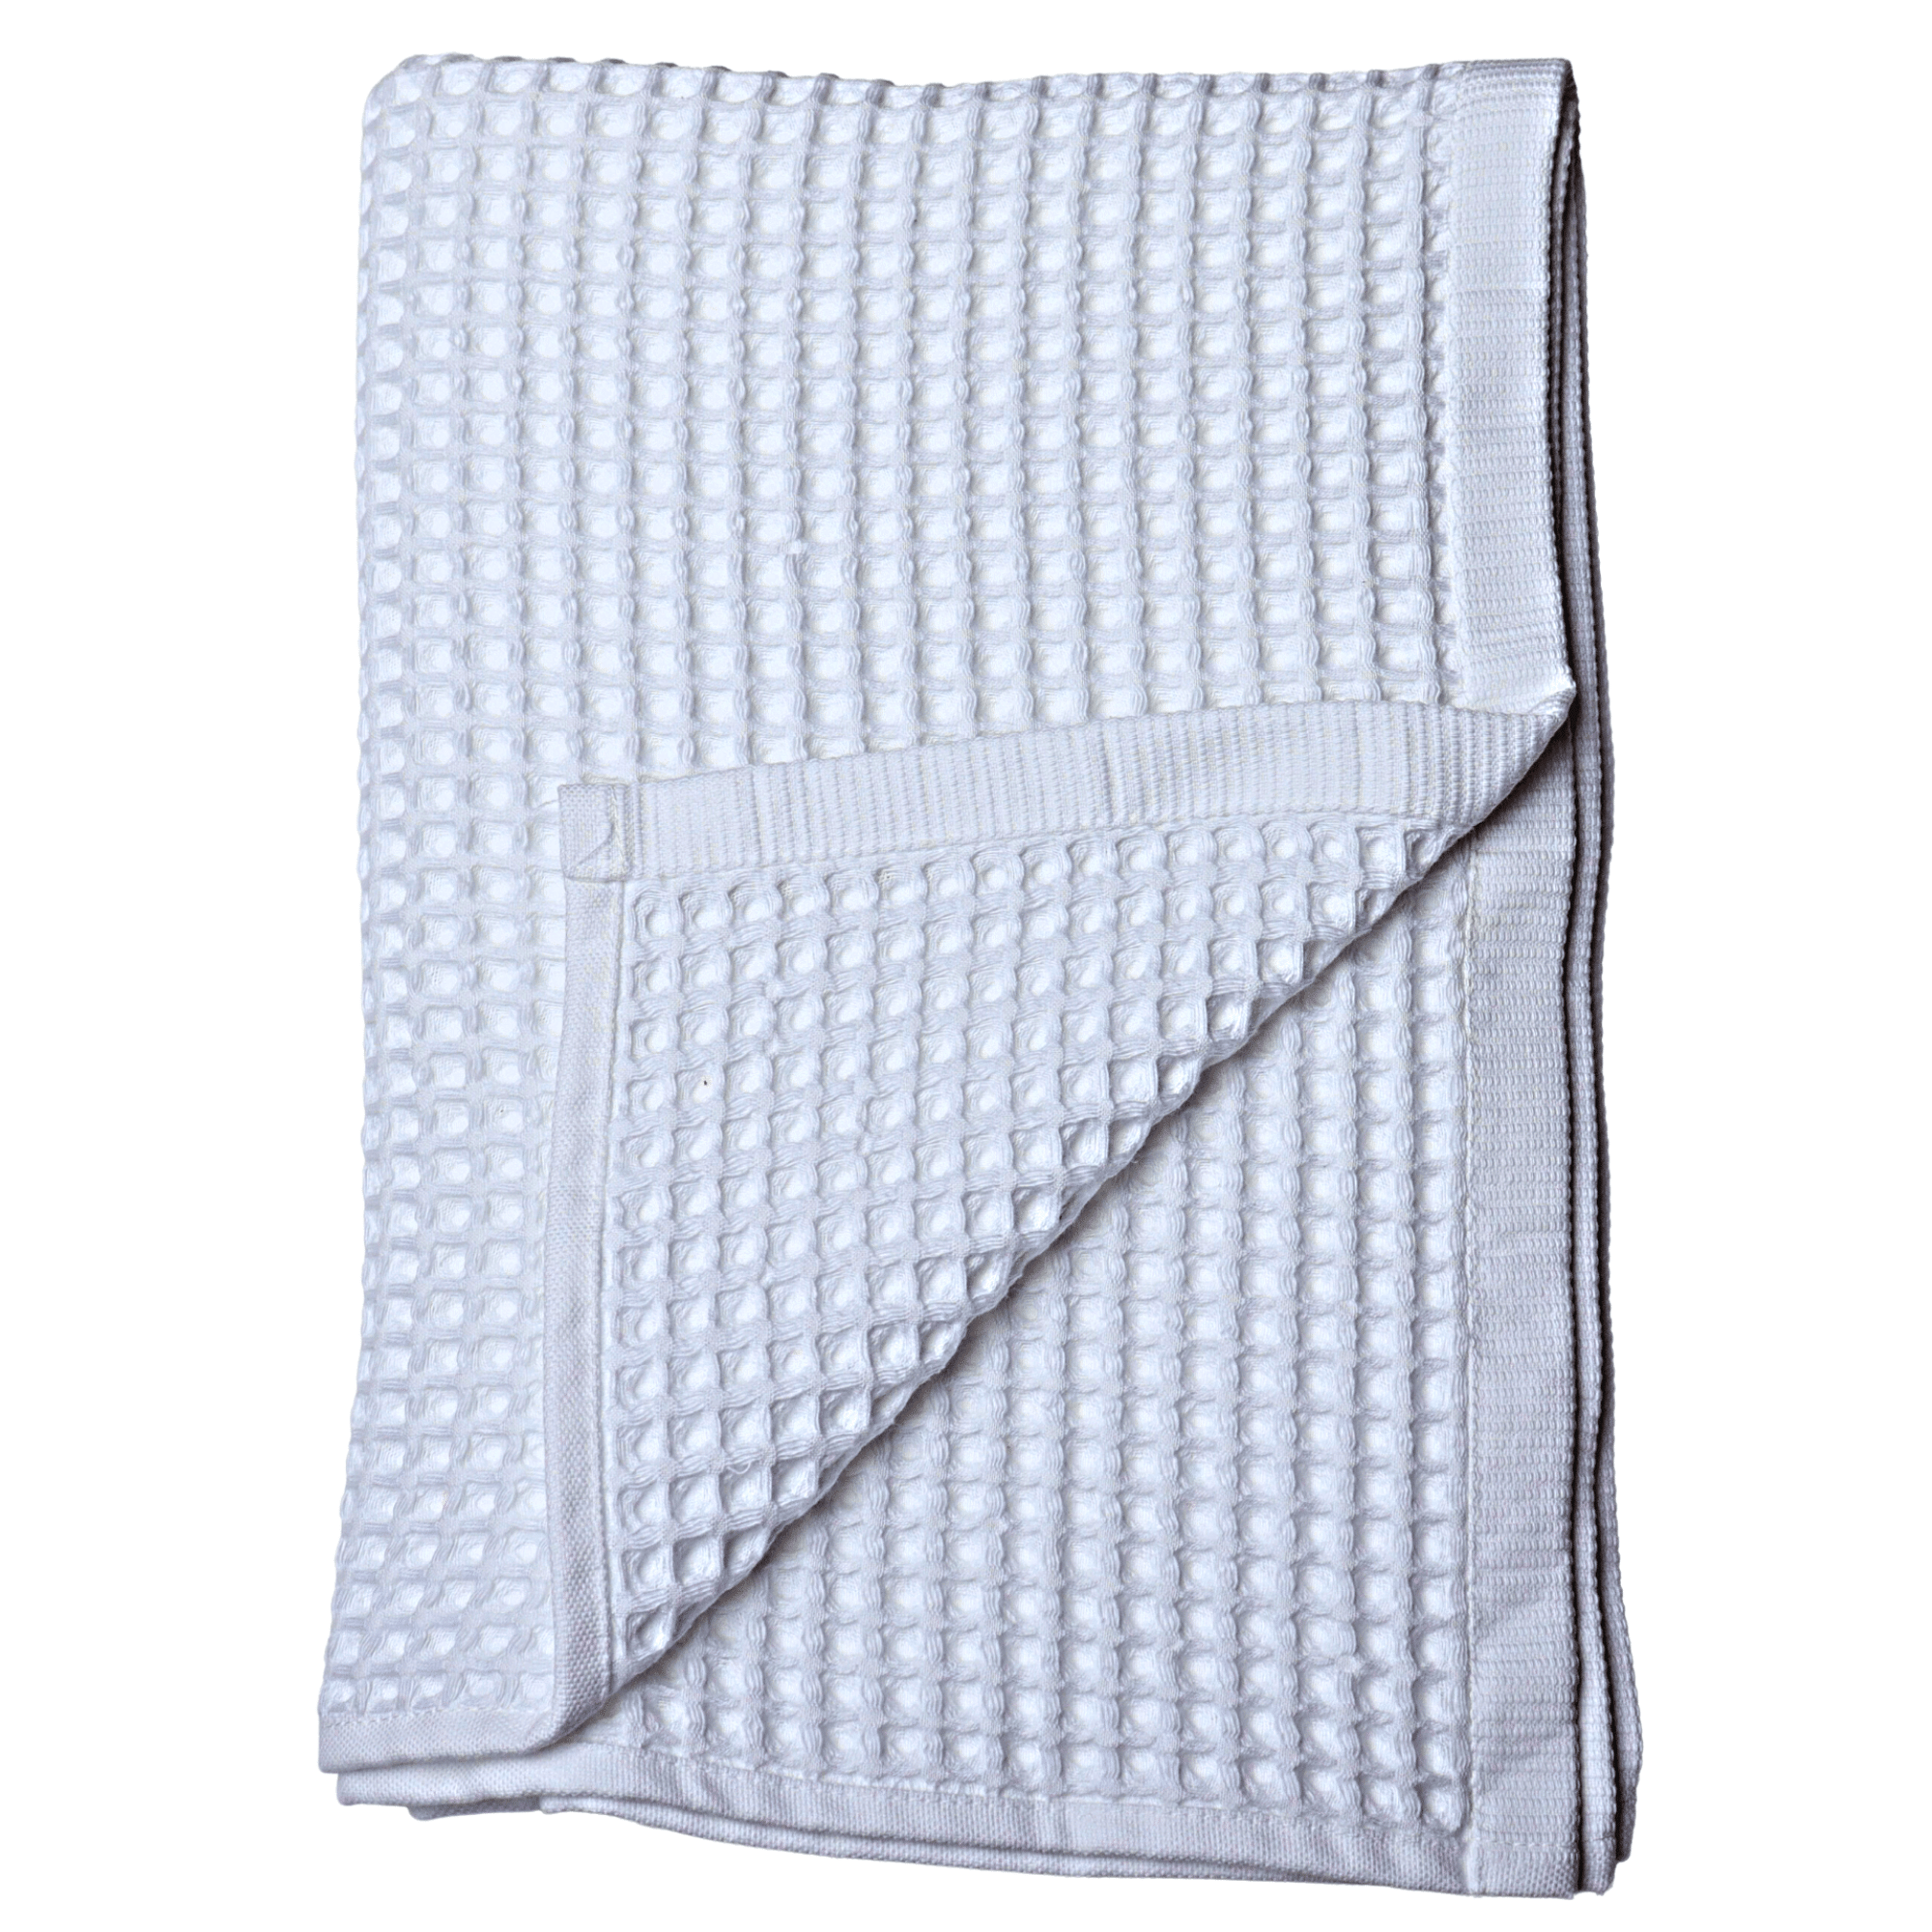 100% Cotton Waffle Weave Ahenque Turkish Bath Towel/Premium Quality  Lightweight Hammam Towel, Stone-washed Peshtemal with Fringe black